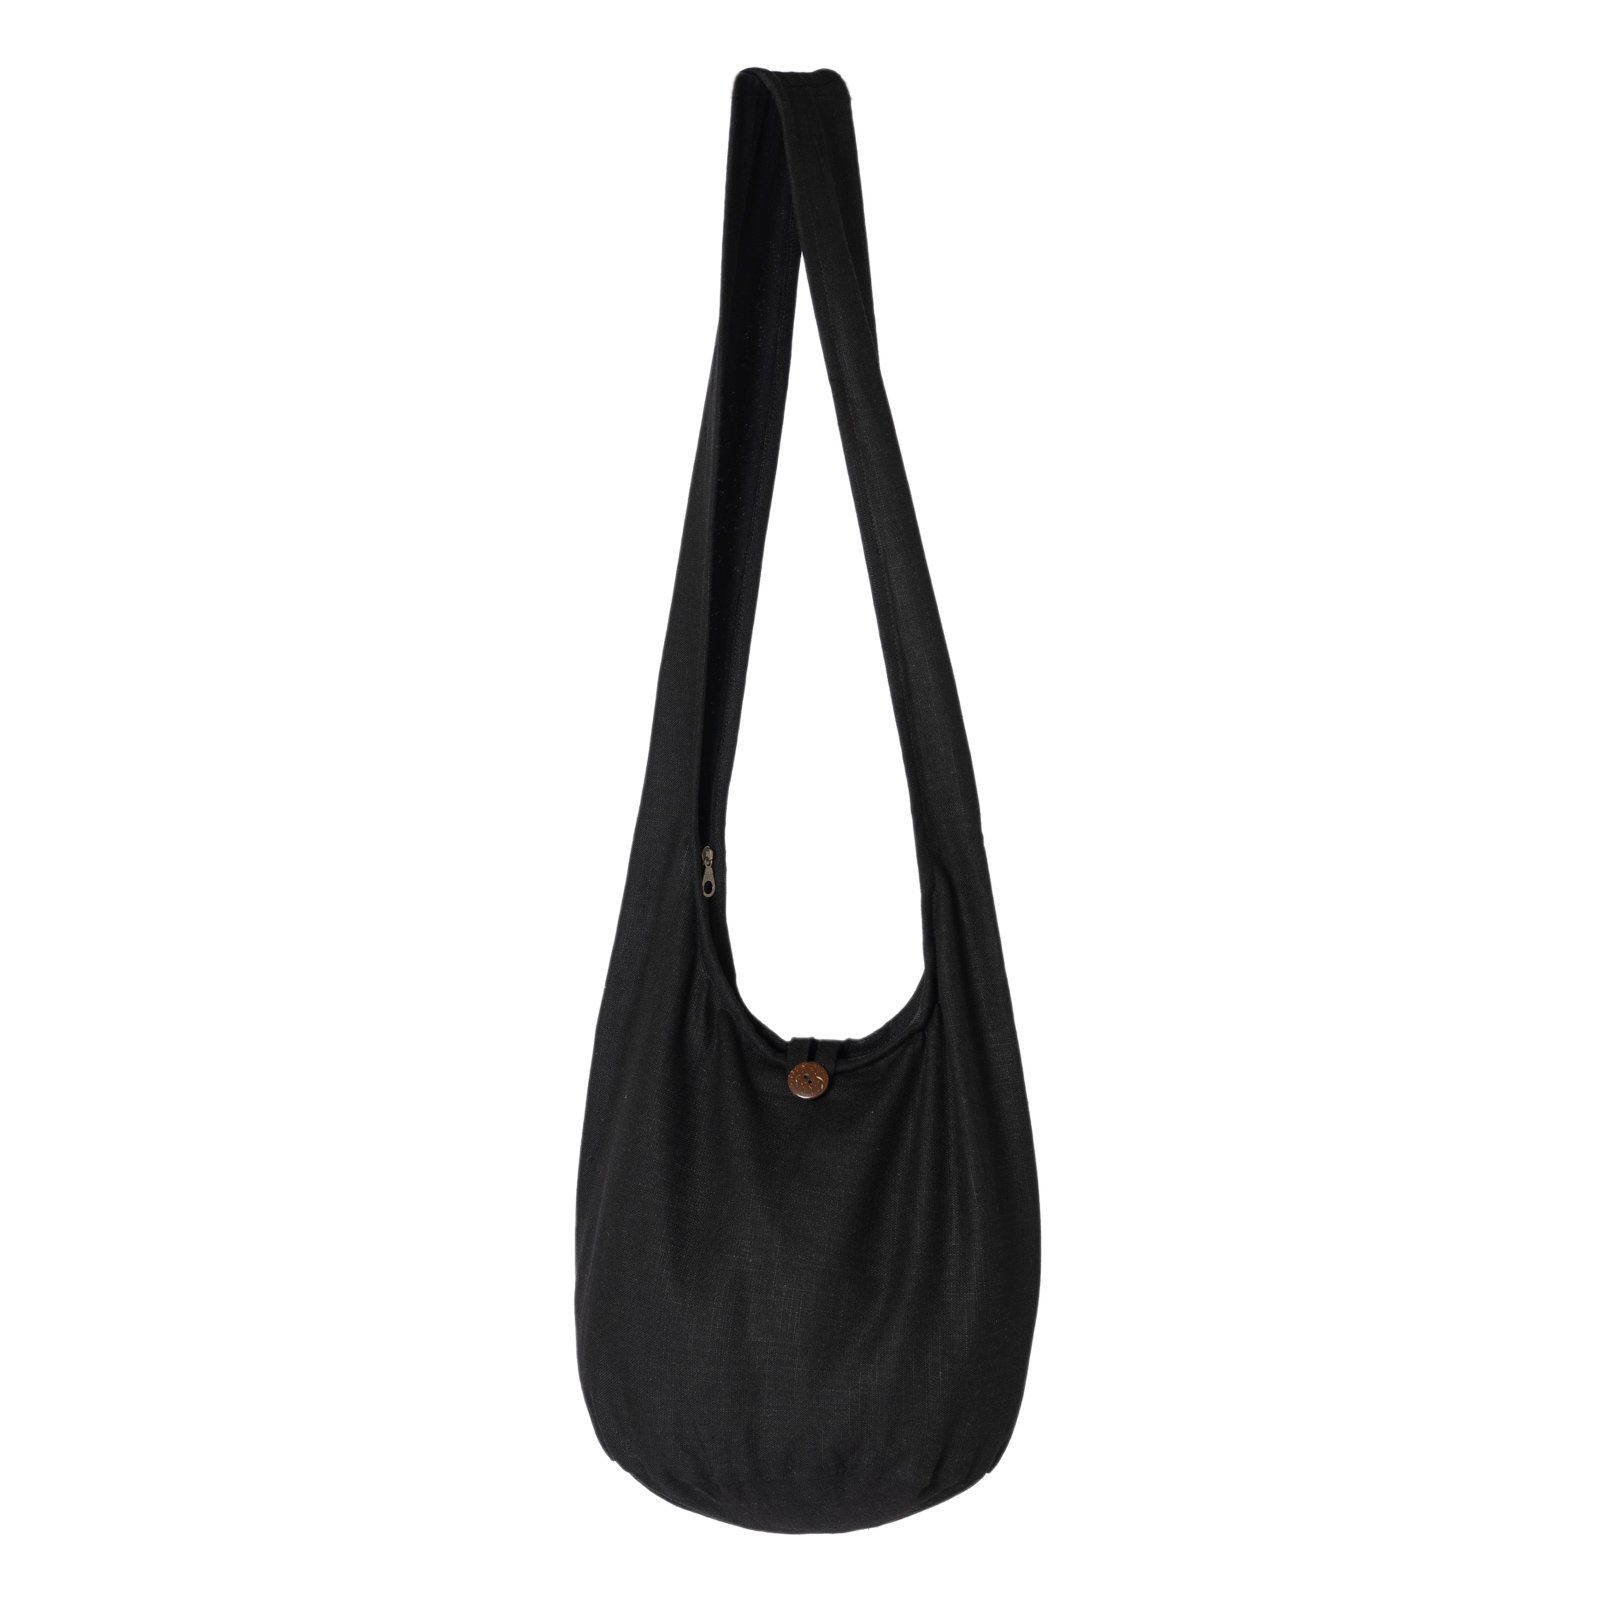 2 Größen, Umhängetasche Wickeltasche Schulterbeutel Hanf oder Schultertasche Schwarz einfarbig auch in PANASIAM Yogatasche Handtasche als Strandtasche aus